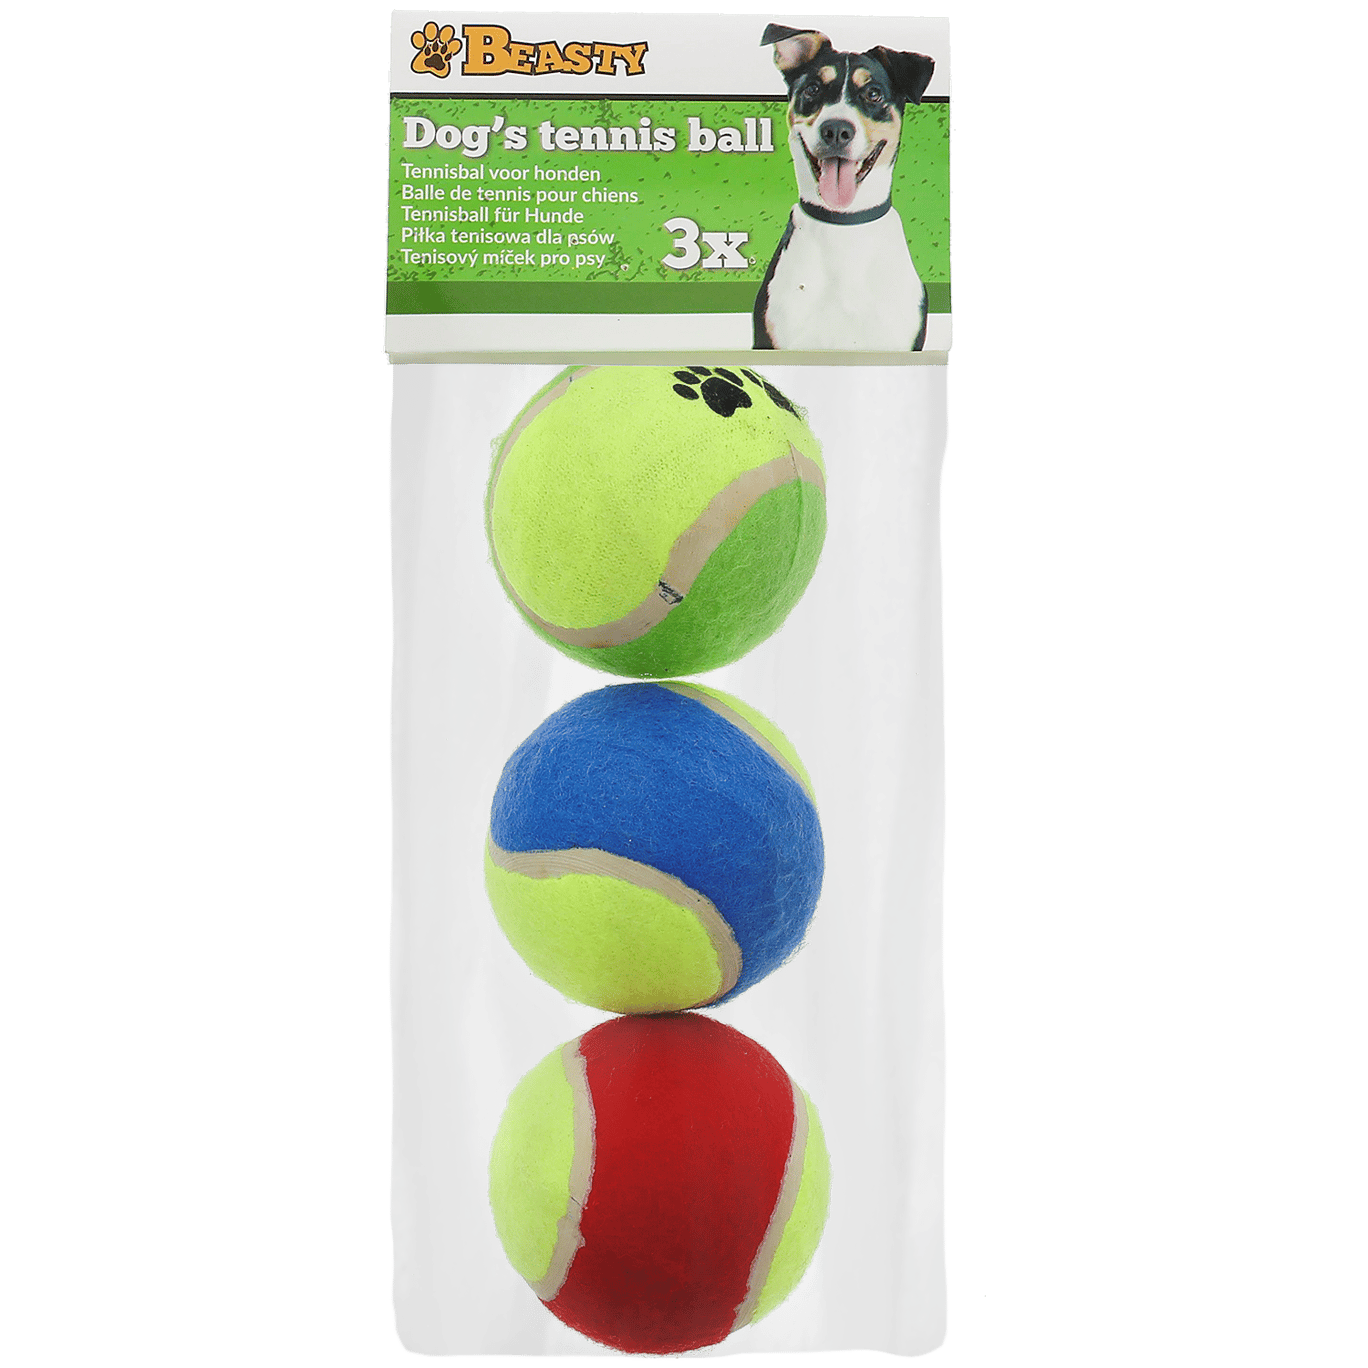 via Gorgelen Op de loer liggen Beasty tennisballen voor honden | Action.com